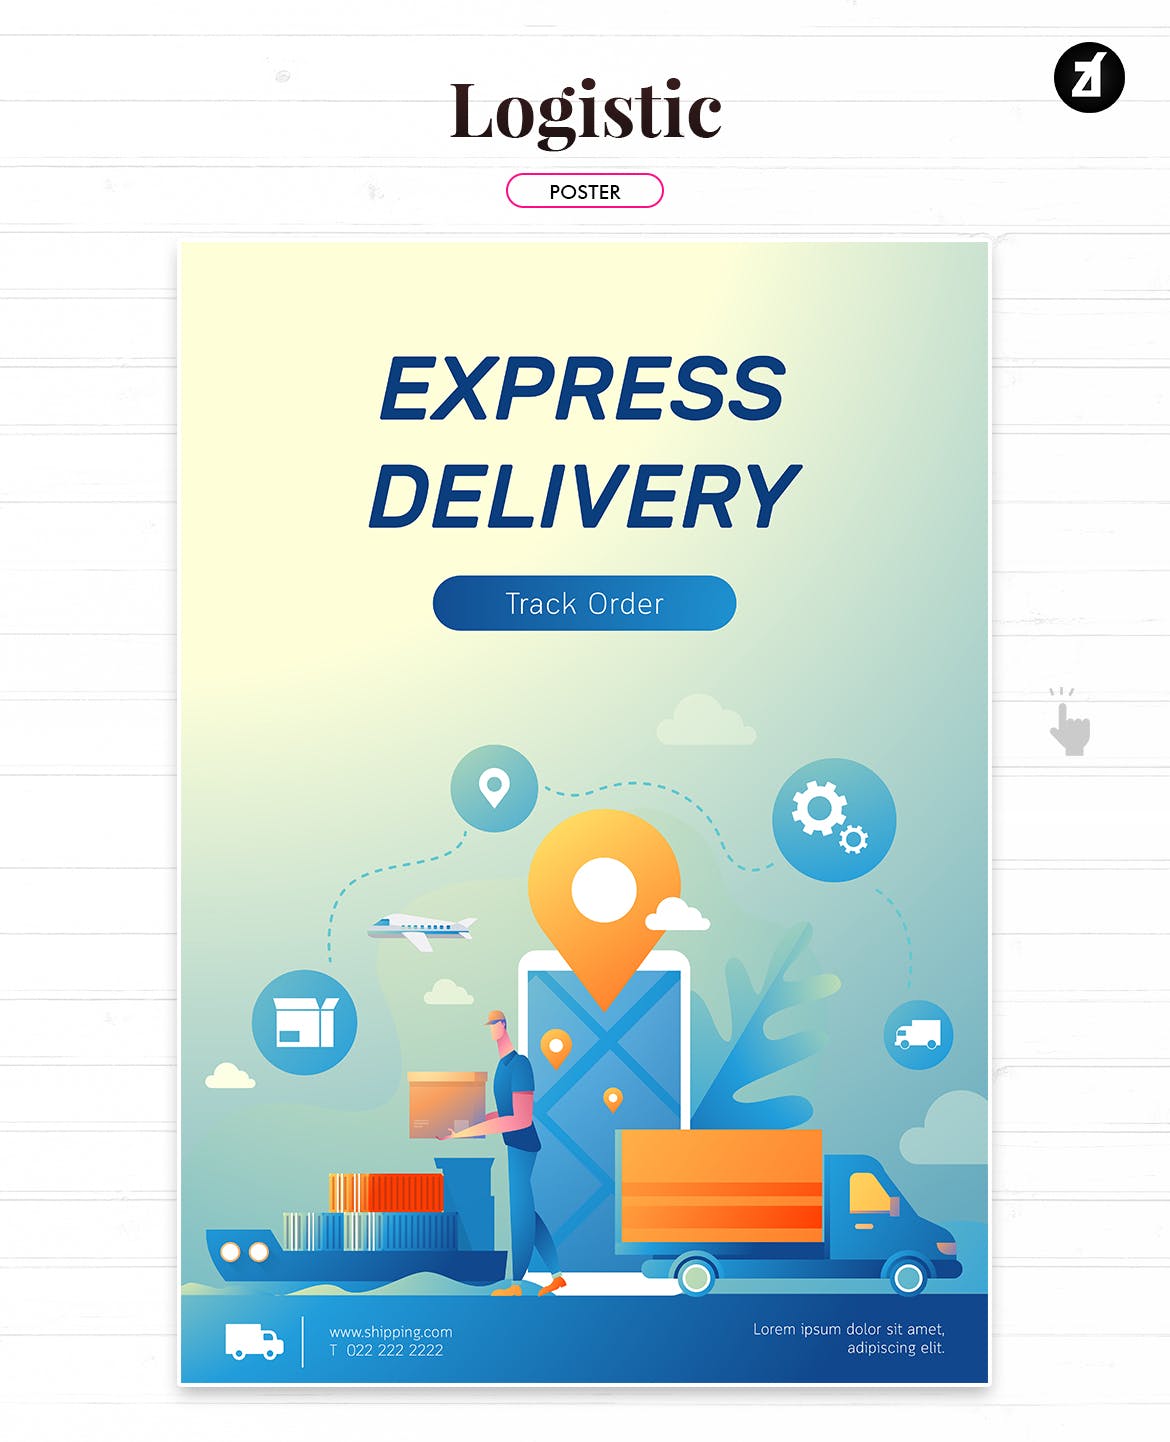 物流配送主题矢量插画设计素材 Logistic and delivery illustration with layout插图(1)